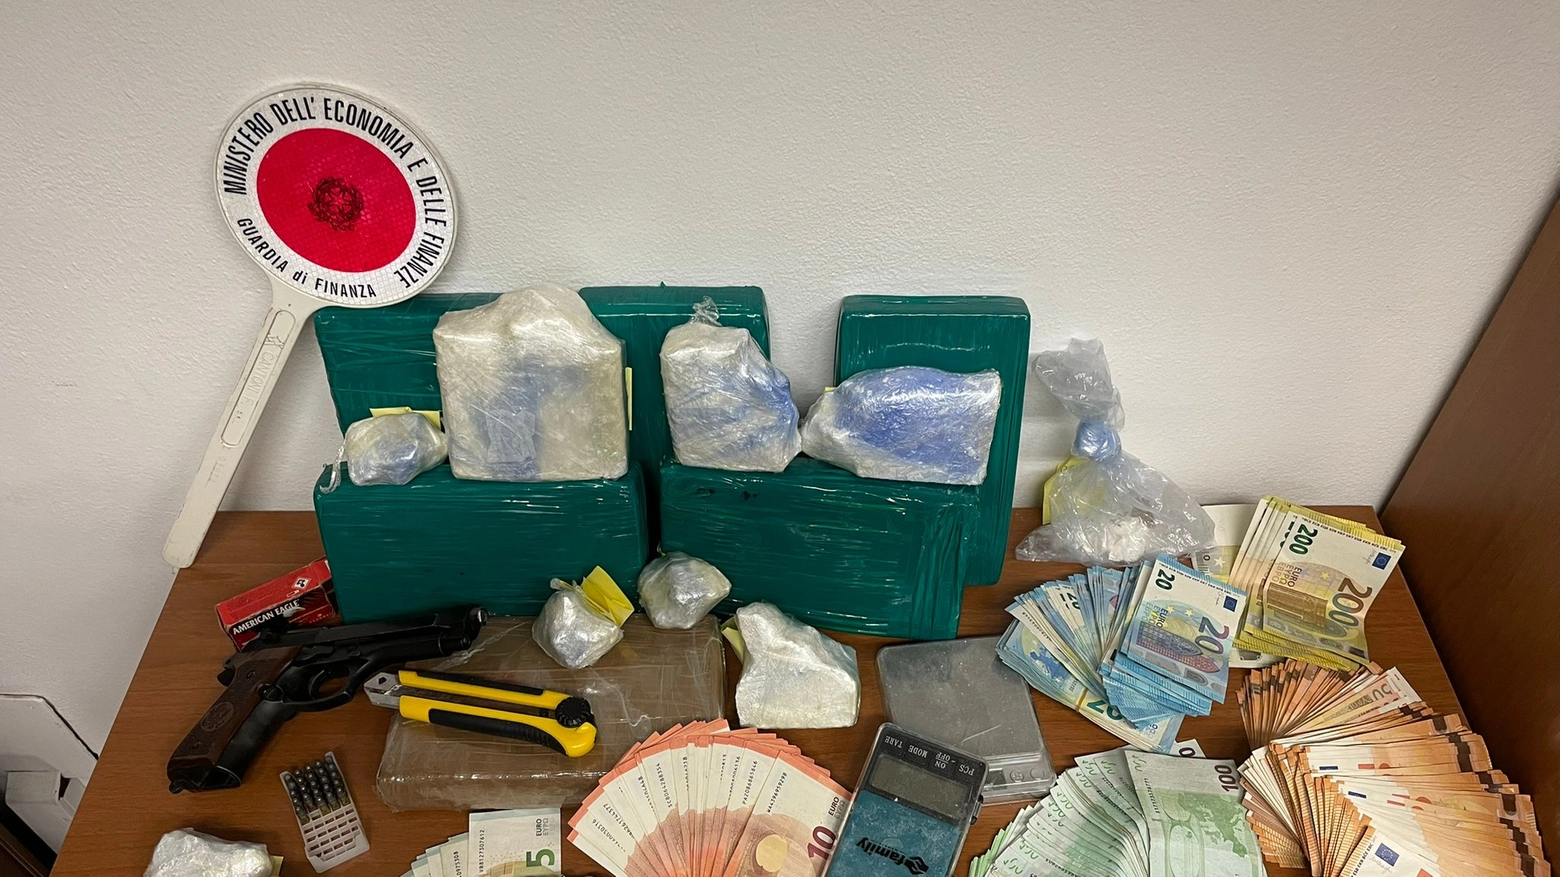 La droga e il materiale sequestrati dalla Guardia di Finanza